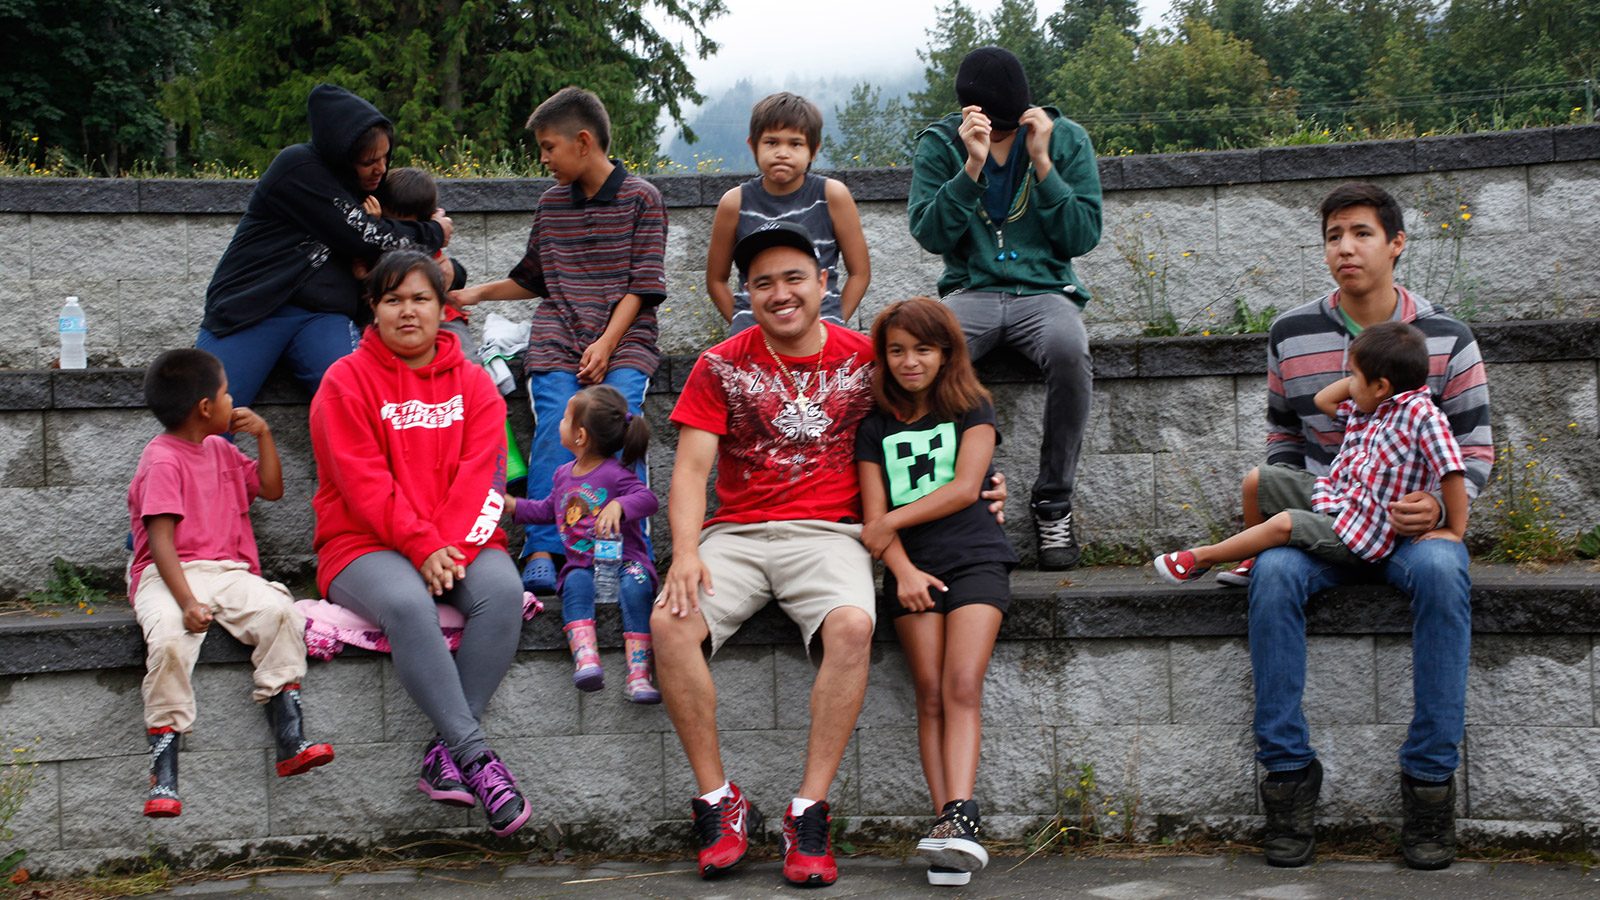 Des jeunes, garçons et filles, dehors, assis sur quelques rangées de pierre disposées en gradins.